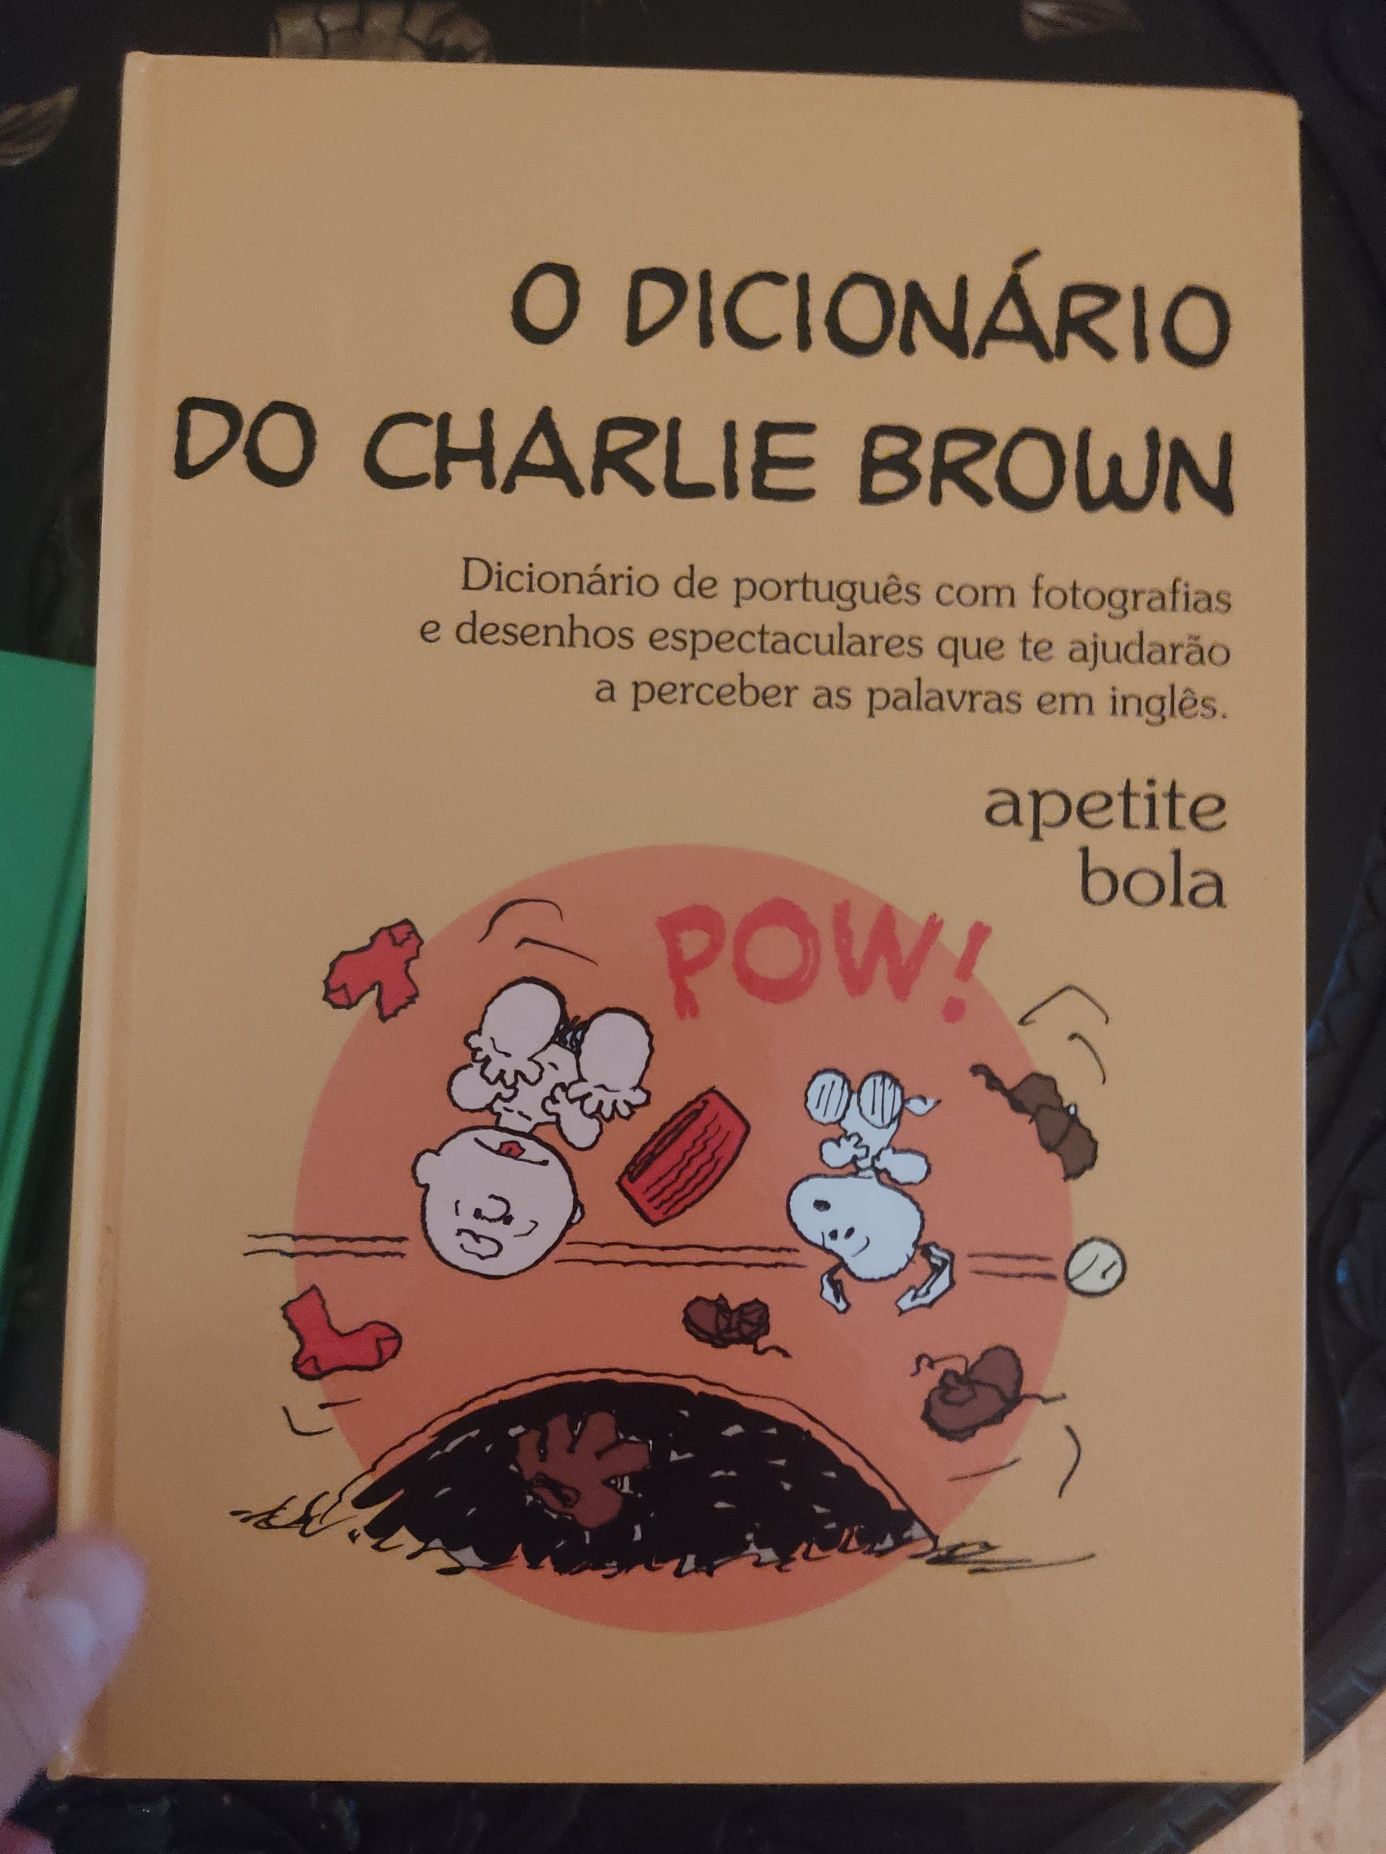 Coleção completa do Dicionário do Charlie Brown, em português